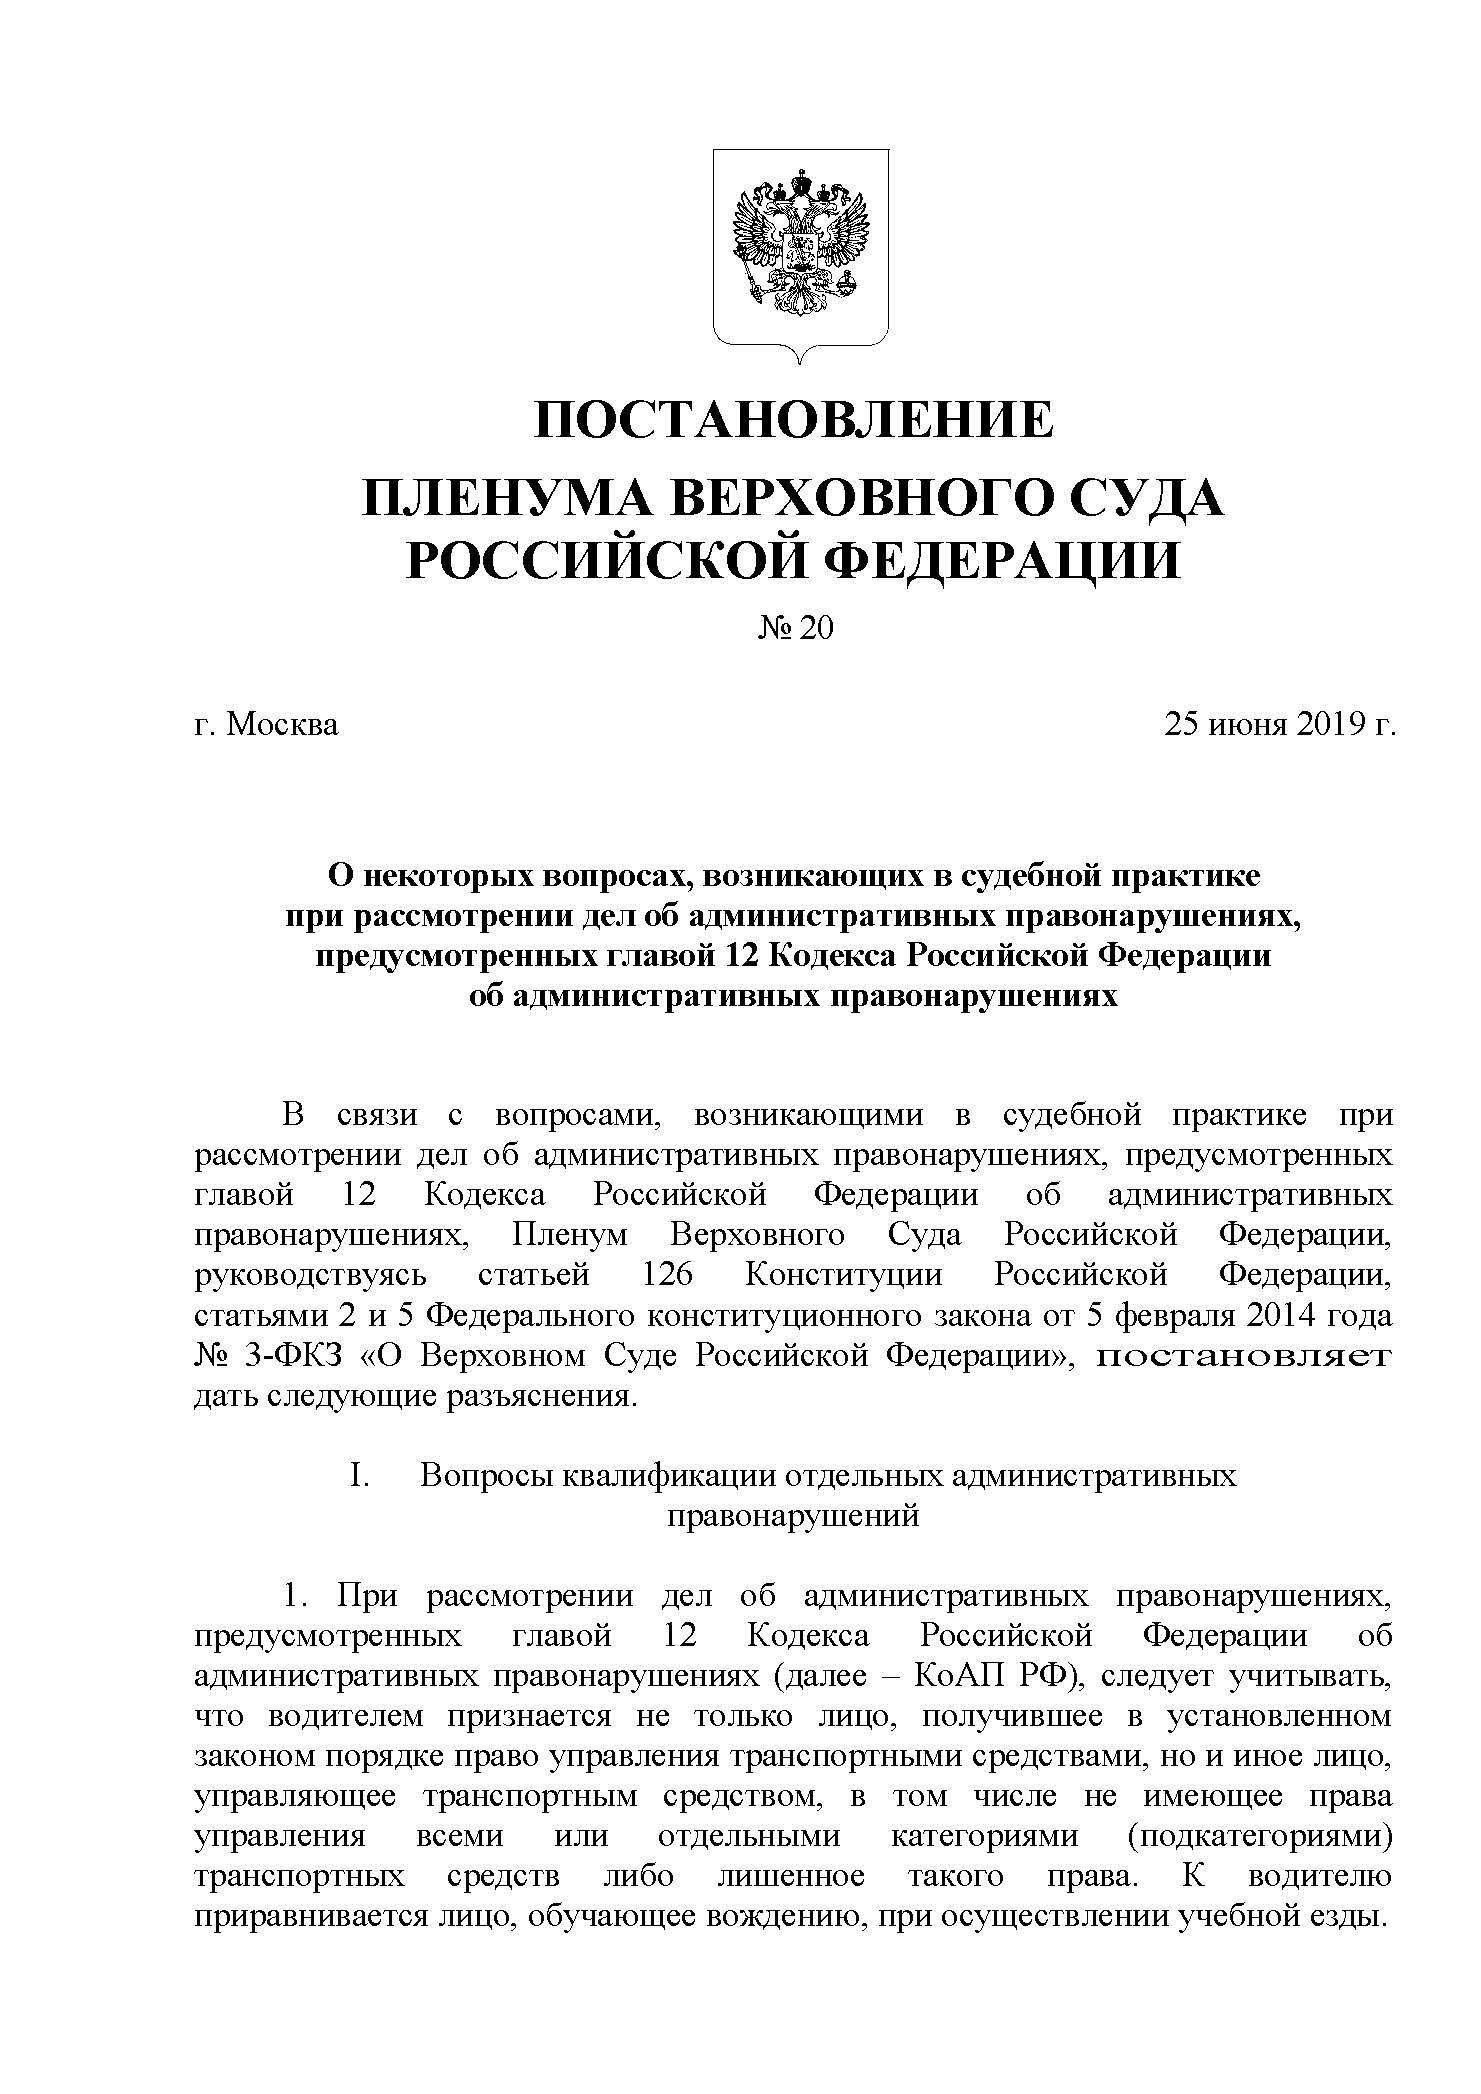 Постановление Пленума Верховного Суда Российской Федерации от 25 июня 2019 года № 20 (1)_Страница_01